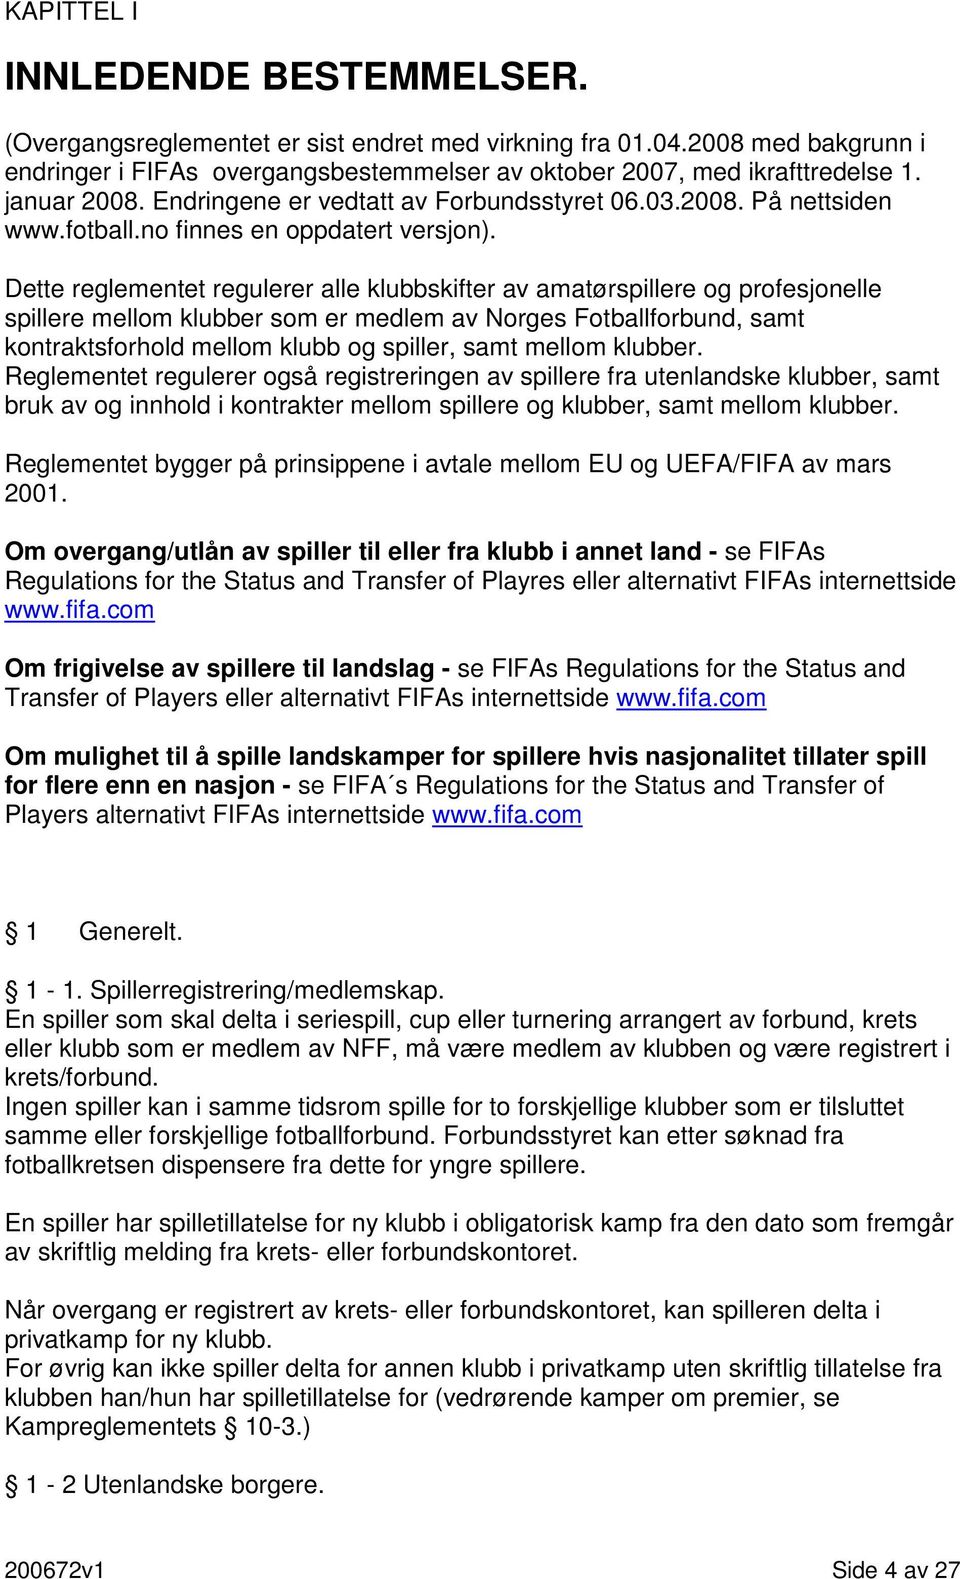 Dette reglementet regulerer alle klubbskifter av amatørspillere og profesjonelle spillere mellom klubber som er medlem av Norges Fotballforbund, samt kontraktsforhold mellom klubb og spiller, samt